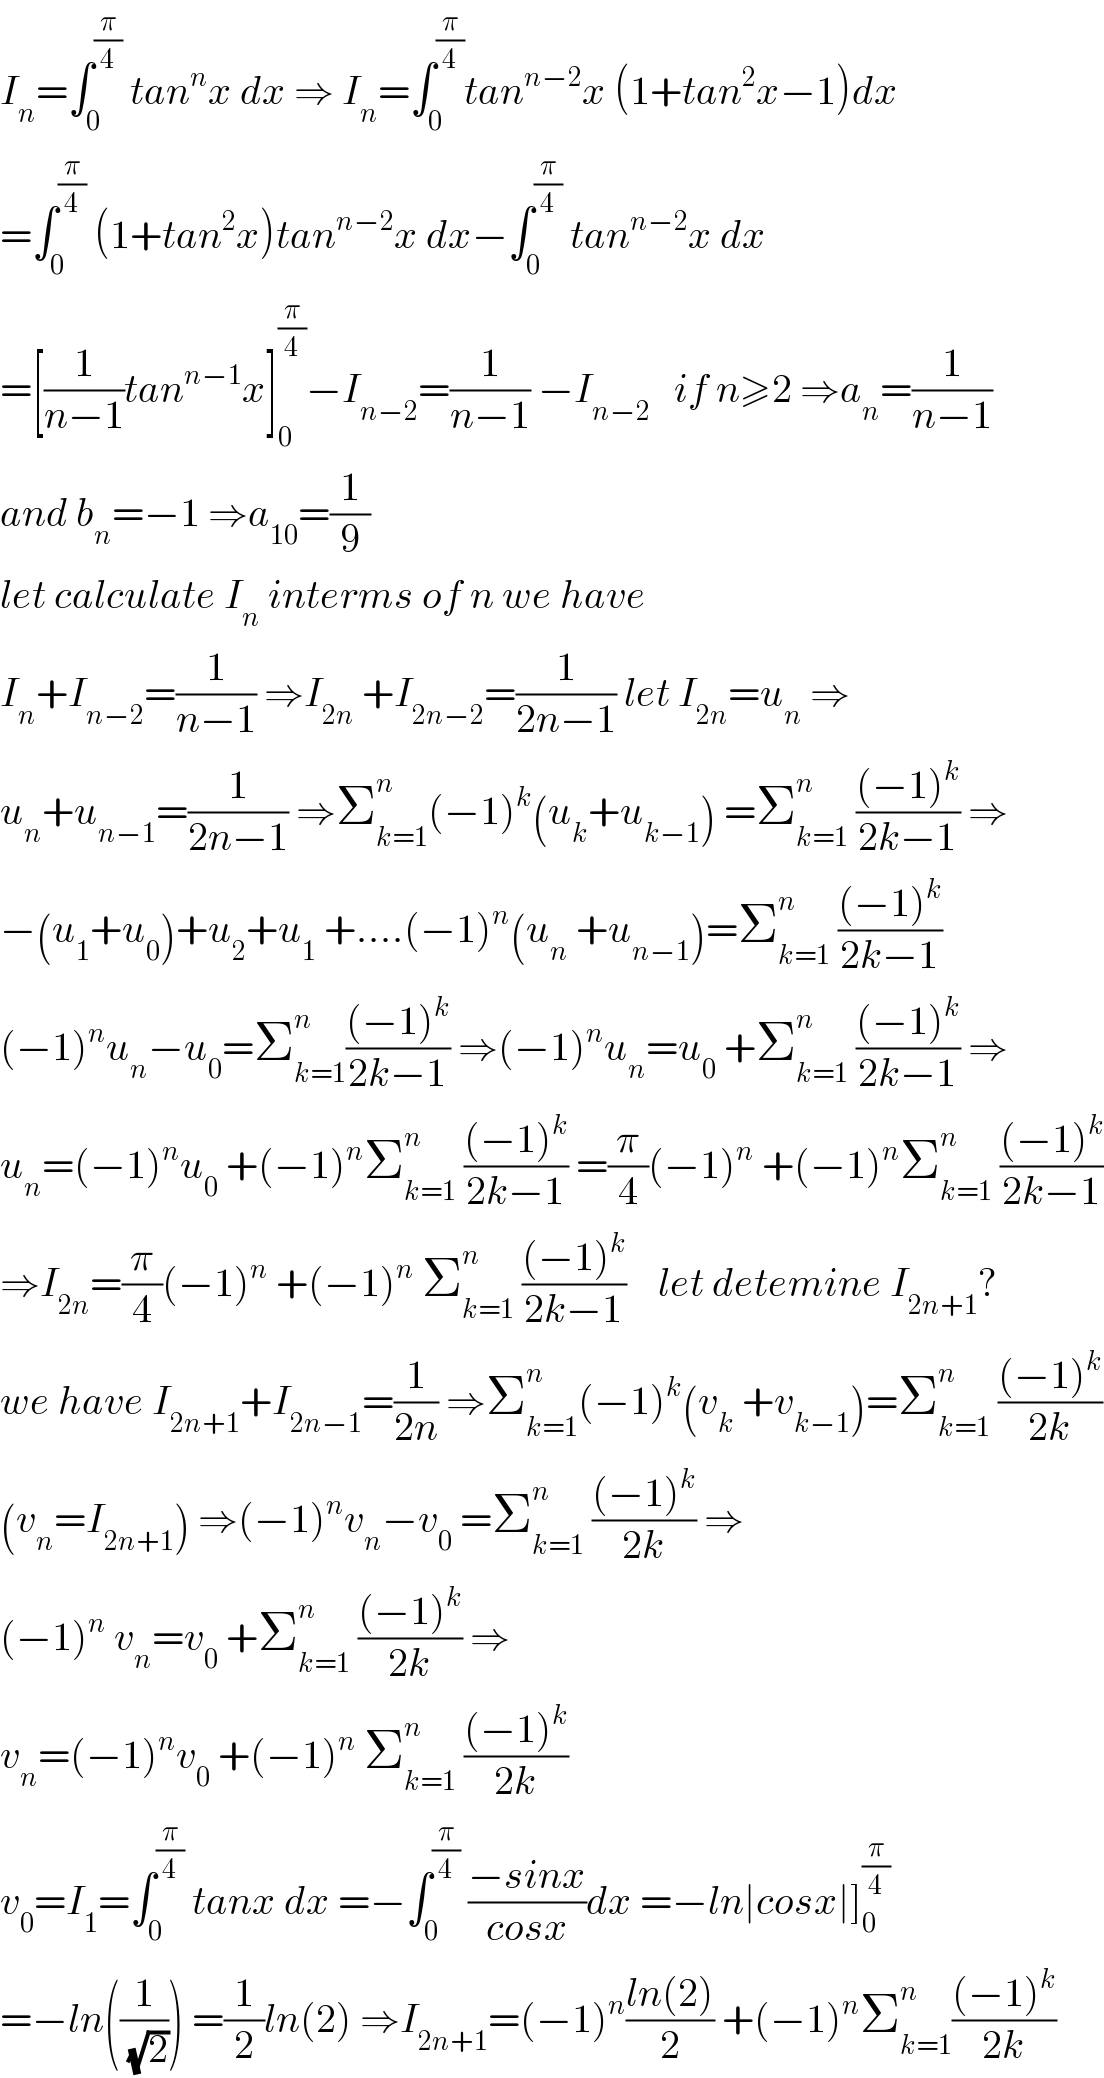 I_n =∫_0 ^(π/4)  tan^n x dx ⇒ I_n =∫_0 ^(π/4) tan^(n−2) x (1+tan^2 x−1)dx  =∫_0 ^(π/4)  (1+tan^2 x)tan^(n−2) x dx−∫_0 ^(π/4)  tan^(n−2) x dx  =[(1/(n−1))tan^(n−1) x]_0 ^(π/4) −I_(n−2) =(1/(n−1)) −I_(n−2)    if n≥2 ⇒a_n =(1/(n−1))  and b_n =−1 ⇒a_(10) =(1/9)  let calculate I_n  interms of n we have  I_n +I_(n−2) =(1/(n−1)) ⇒I_(2n)  +I_(2n−2) =(1/(2n−1)) let I_(2n) =u_n  ⇒  u_n +u_(n−1) =(1/(2n−1)) ⇒Σ_(k=1) ^n (−1)^k (u_k +u_(k−1) ) =Σ_(k=1) ^n  (((−1)^k )/(2k−1)) ⇒  −(u_1 +u_0 )+u_2 +u_1  +....(−1)^n (u_n  +u_(n−1) )=Σ_(k=1) ^n  (((−1)^k )/(2k−1))  (−1)^n u_n −u_0 =Σ_(k=1) ^n (((−1)^k )/(2k−1)) ⇒(−1)^n u_n =u_0  +Σ_(k=1) ^n  (((−1)^k )/(2k−1)) ⇒  u_n =(−1)^n u_0  +(−1)^n Σ_(k=1) ^n  (((−1)^k )/(2k−1)) =(π/4)(−1)^n  +(−1)^n Σ_(k=1) ^n  (((−1)^k )/(2k−1))  ⇒I_(2n) =(π/4)(−1)^n  +(−1)^n  Σ_(k=1) ^n  (((−1)^k )/(2k−1))    let detemine I_(2n+1) ?  we have I_(2n+1) +I_(2n−1) =(1/(2n)) ⇒Σ_(k=1) ^n (−1)^k (v_k  +v_(k−1) )=Σ_(k=1) ^n  (((−1)^k )/(2k))  (v_n =I_(2n+1) ) ⇒(−1)^n v_n −v_0  =Σ_(k=1) ^n  (((−1)^k )/(2k)) ⇒  (−1)^n  v_n =v_0  +Σ_(k=1) ^n  (((−1)^k )/(2k)) ⇒  v_n =(−1)^n v_0  +(−1)^n  Σ_(k=1) ^n  (((−1)^k )/(2k))  v_0 =I_1 =∫_0 ^(π/4)  tanx dx =−∫_0 ^(π/4)  ((−sinx)/(cosx))dx =−ln∣cosx∣]_0 ^(π/4)   =−ln((1/(√2))) =(1/2)ln(2) ⇒I_(2n+1) =(−1)^n ((ln(2))/2) +(−1)^n Σ_(k=1) ^n (((−1)^k )/(2k))  